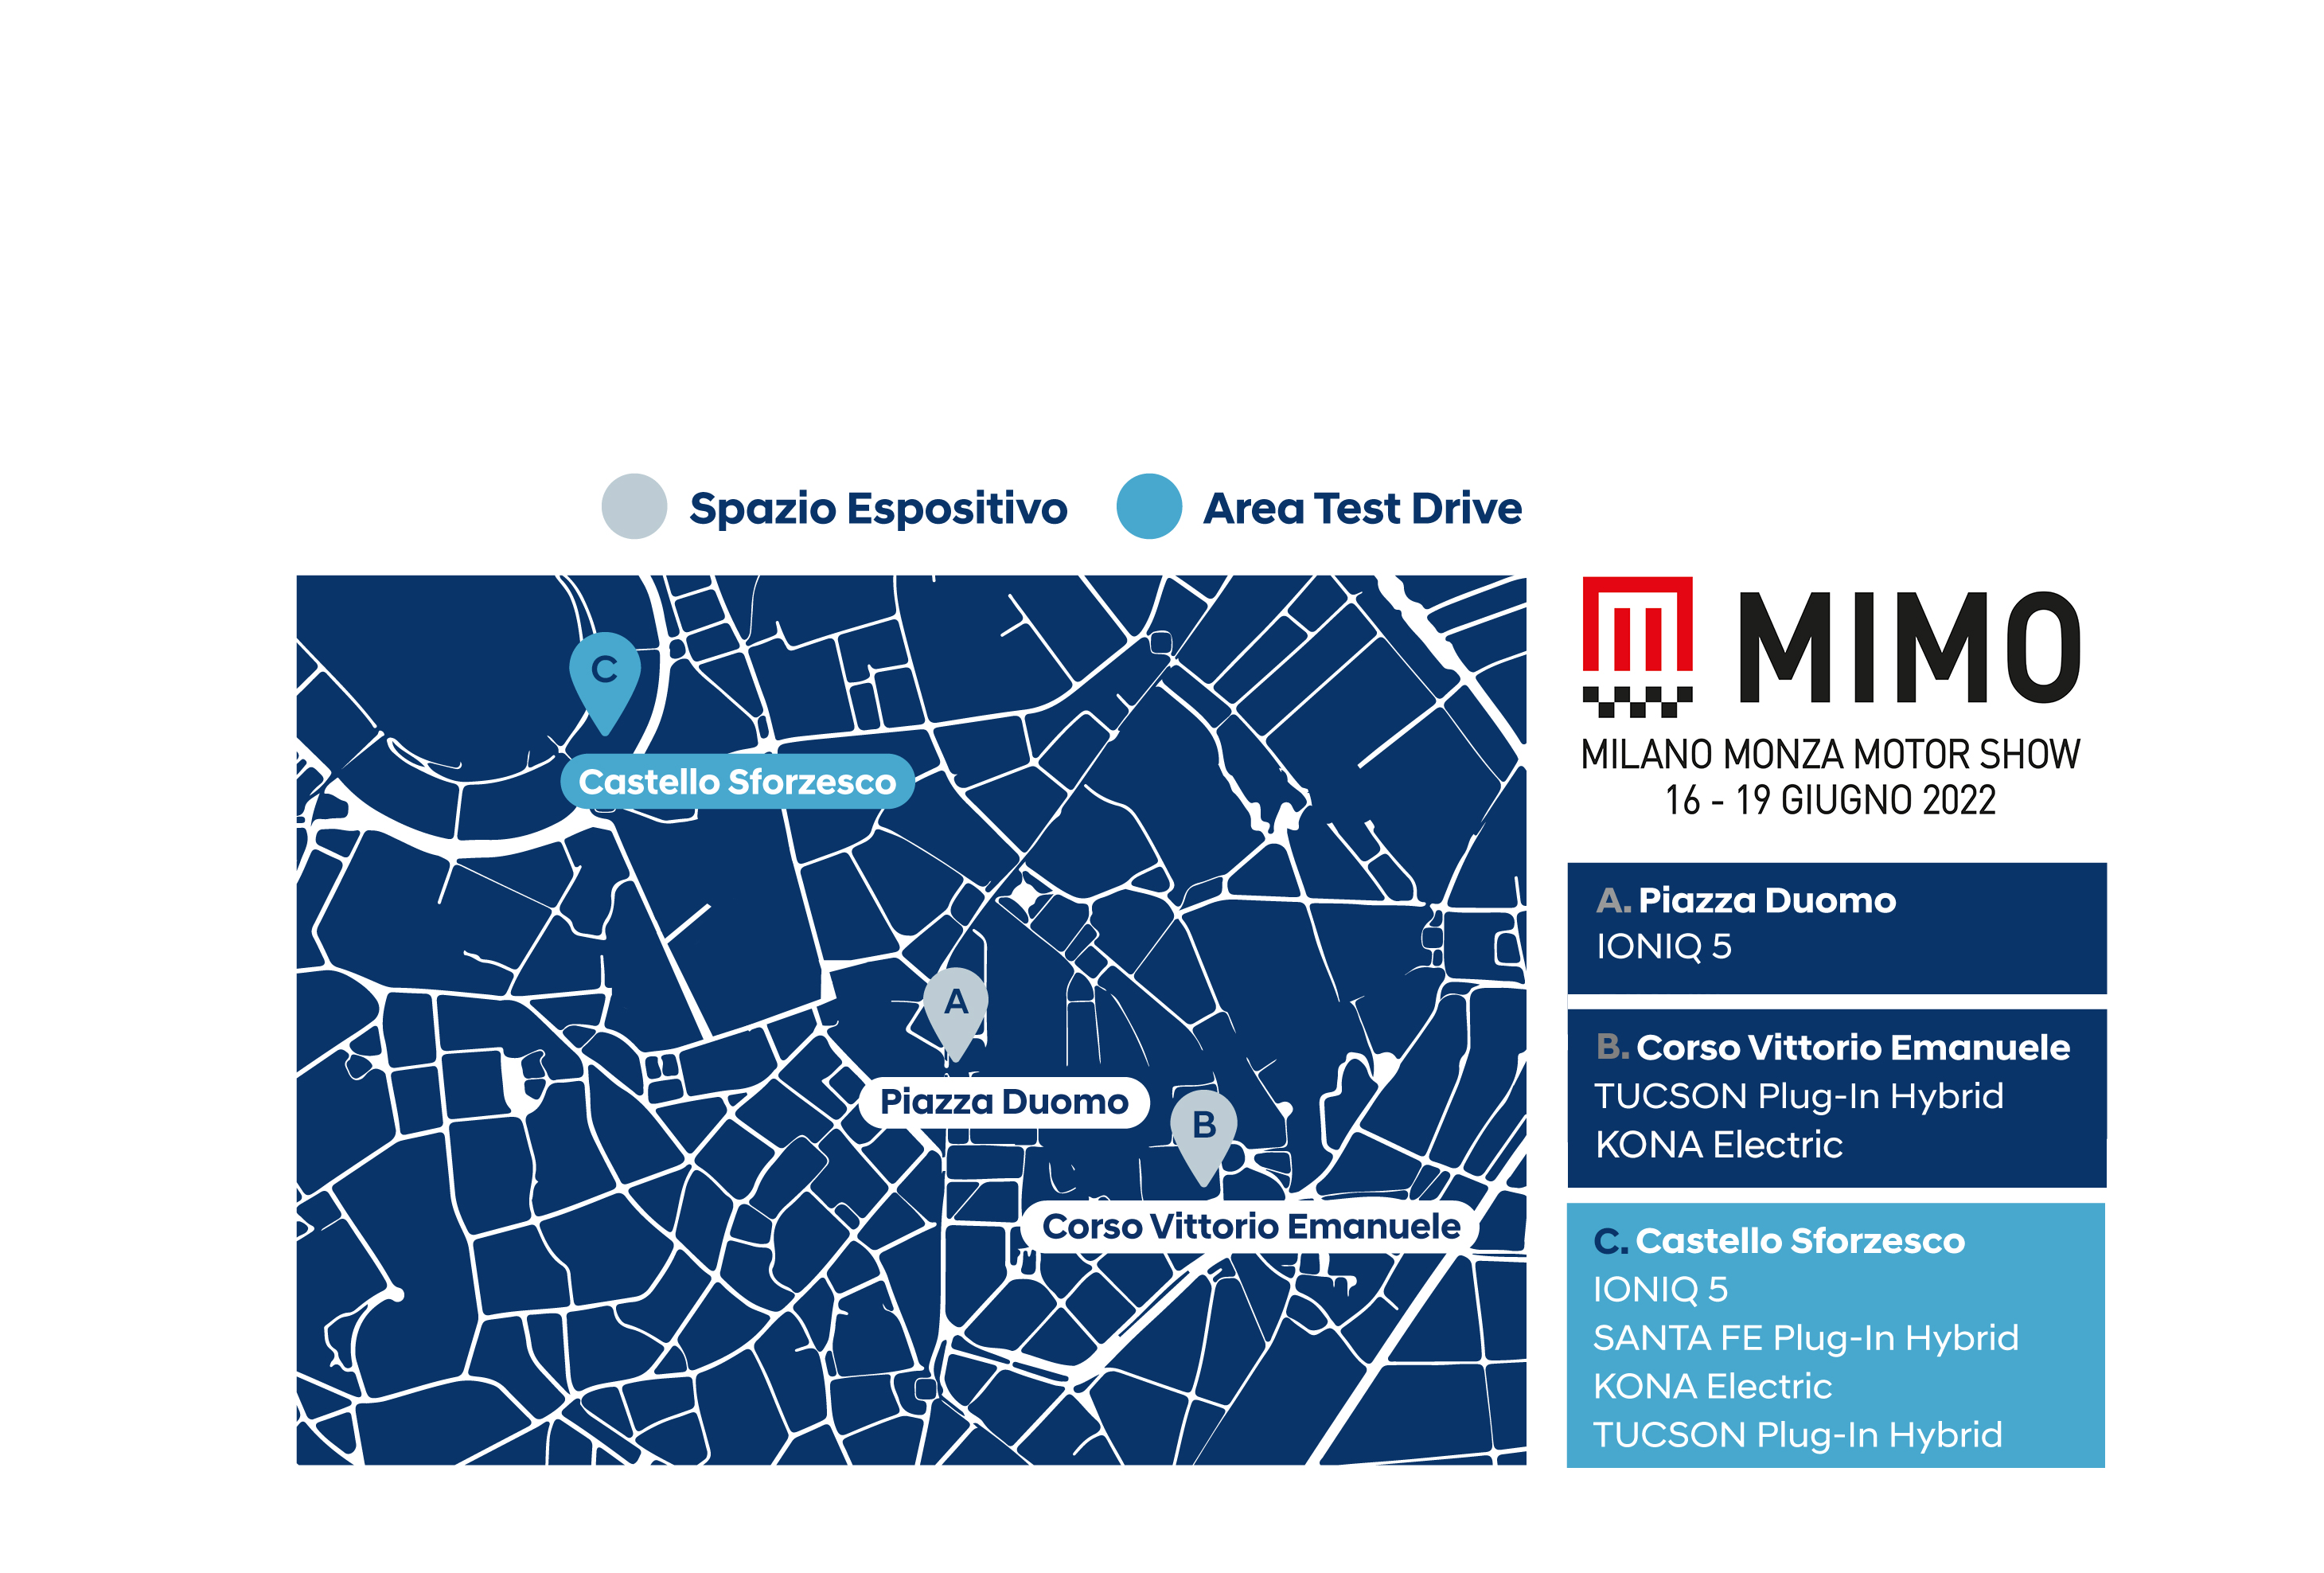 Mappa di Milano con location MIMO 2022